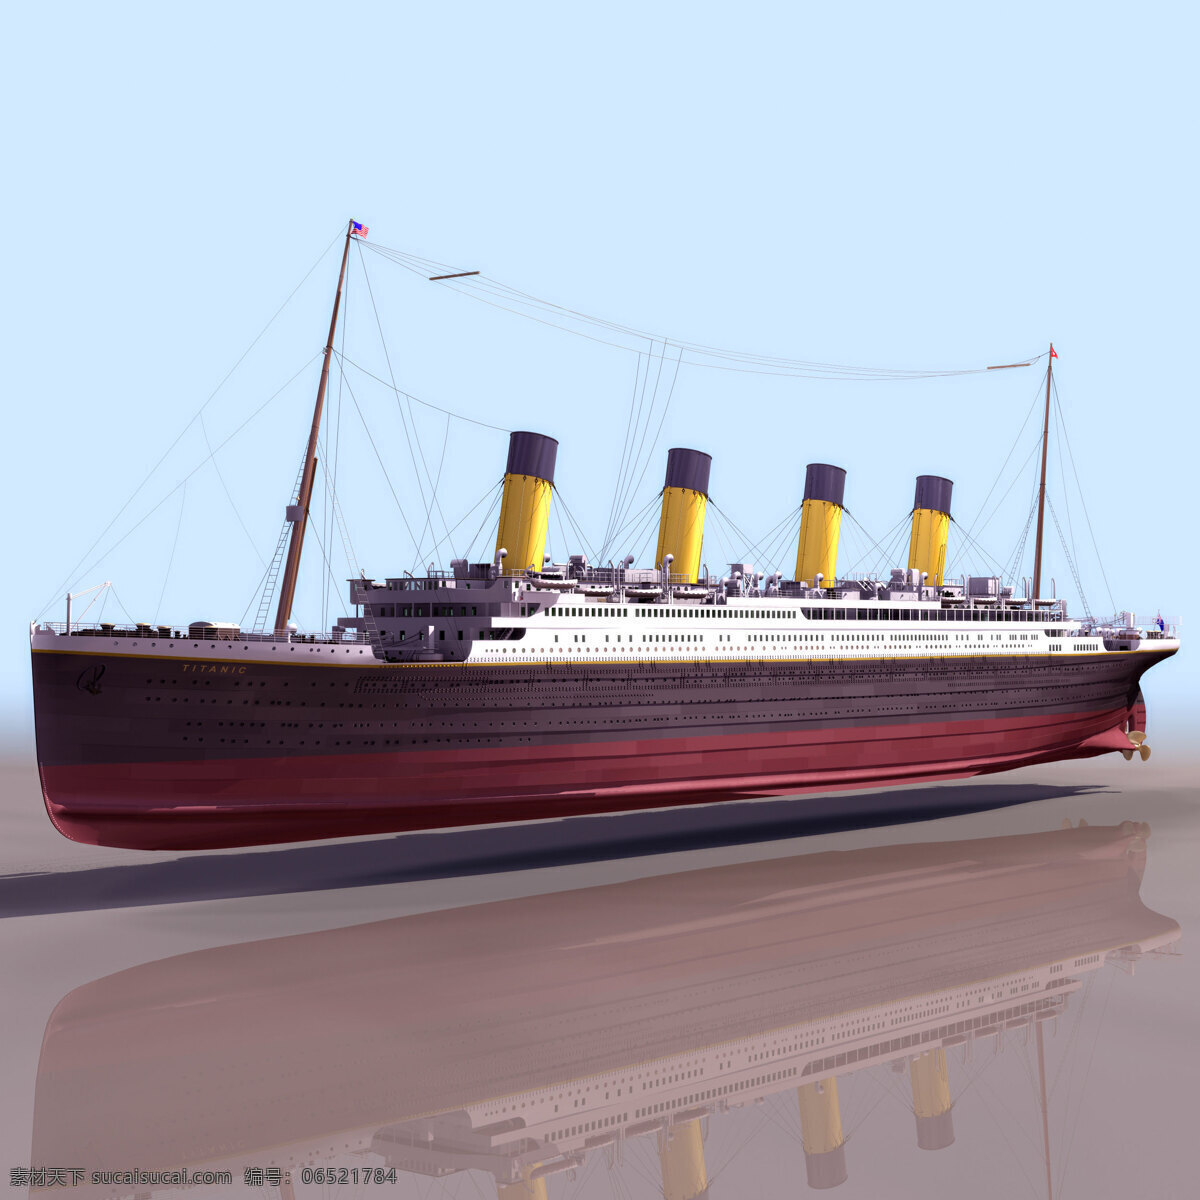 船模型018 titanic 船舶 船模型 机动车辆 3d模型素材 电器模型